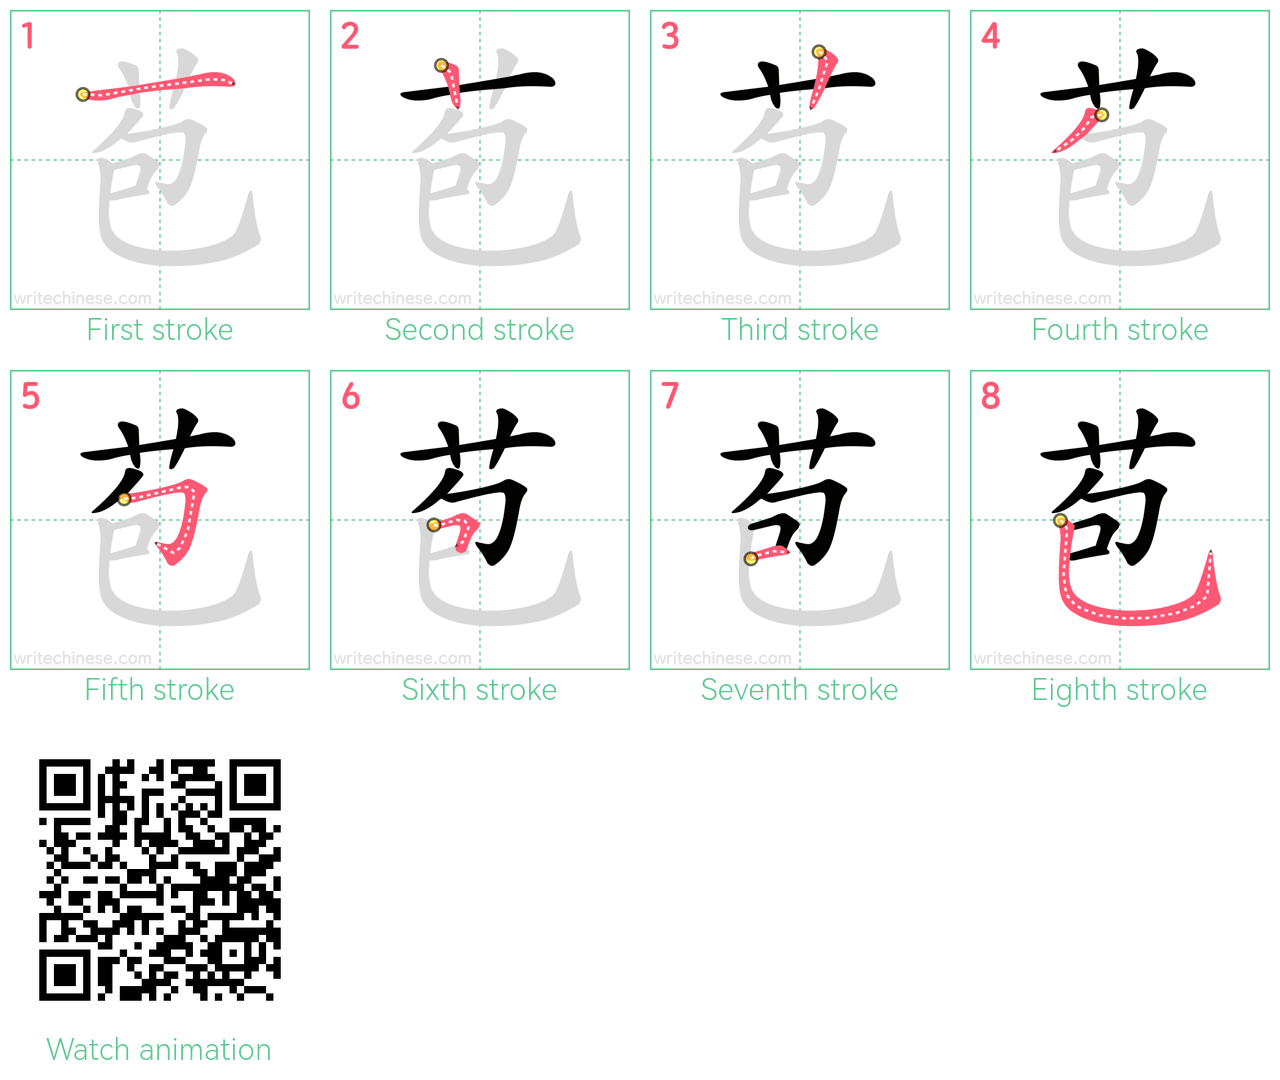 苞 step-by-step stroke order diagrams